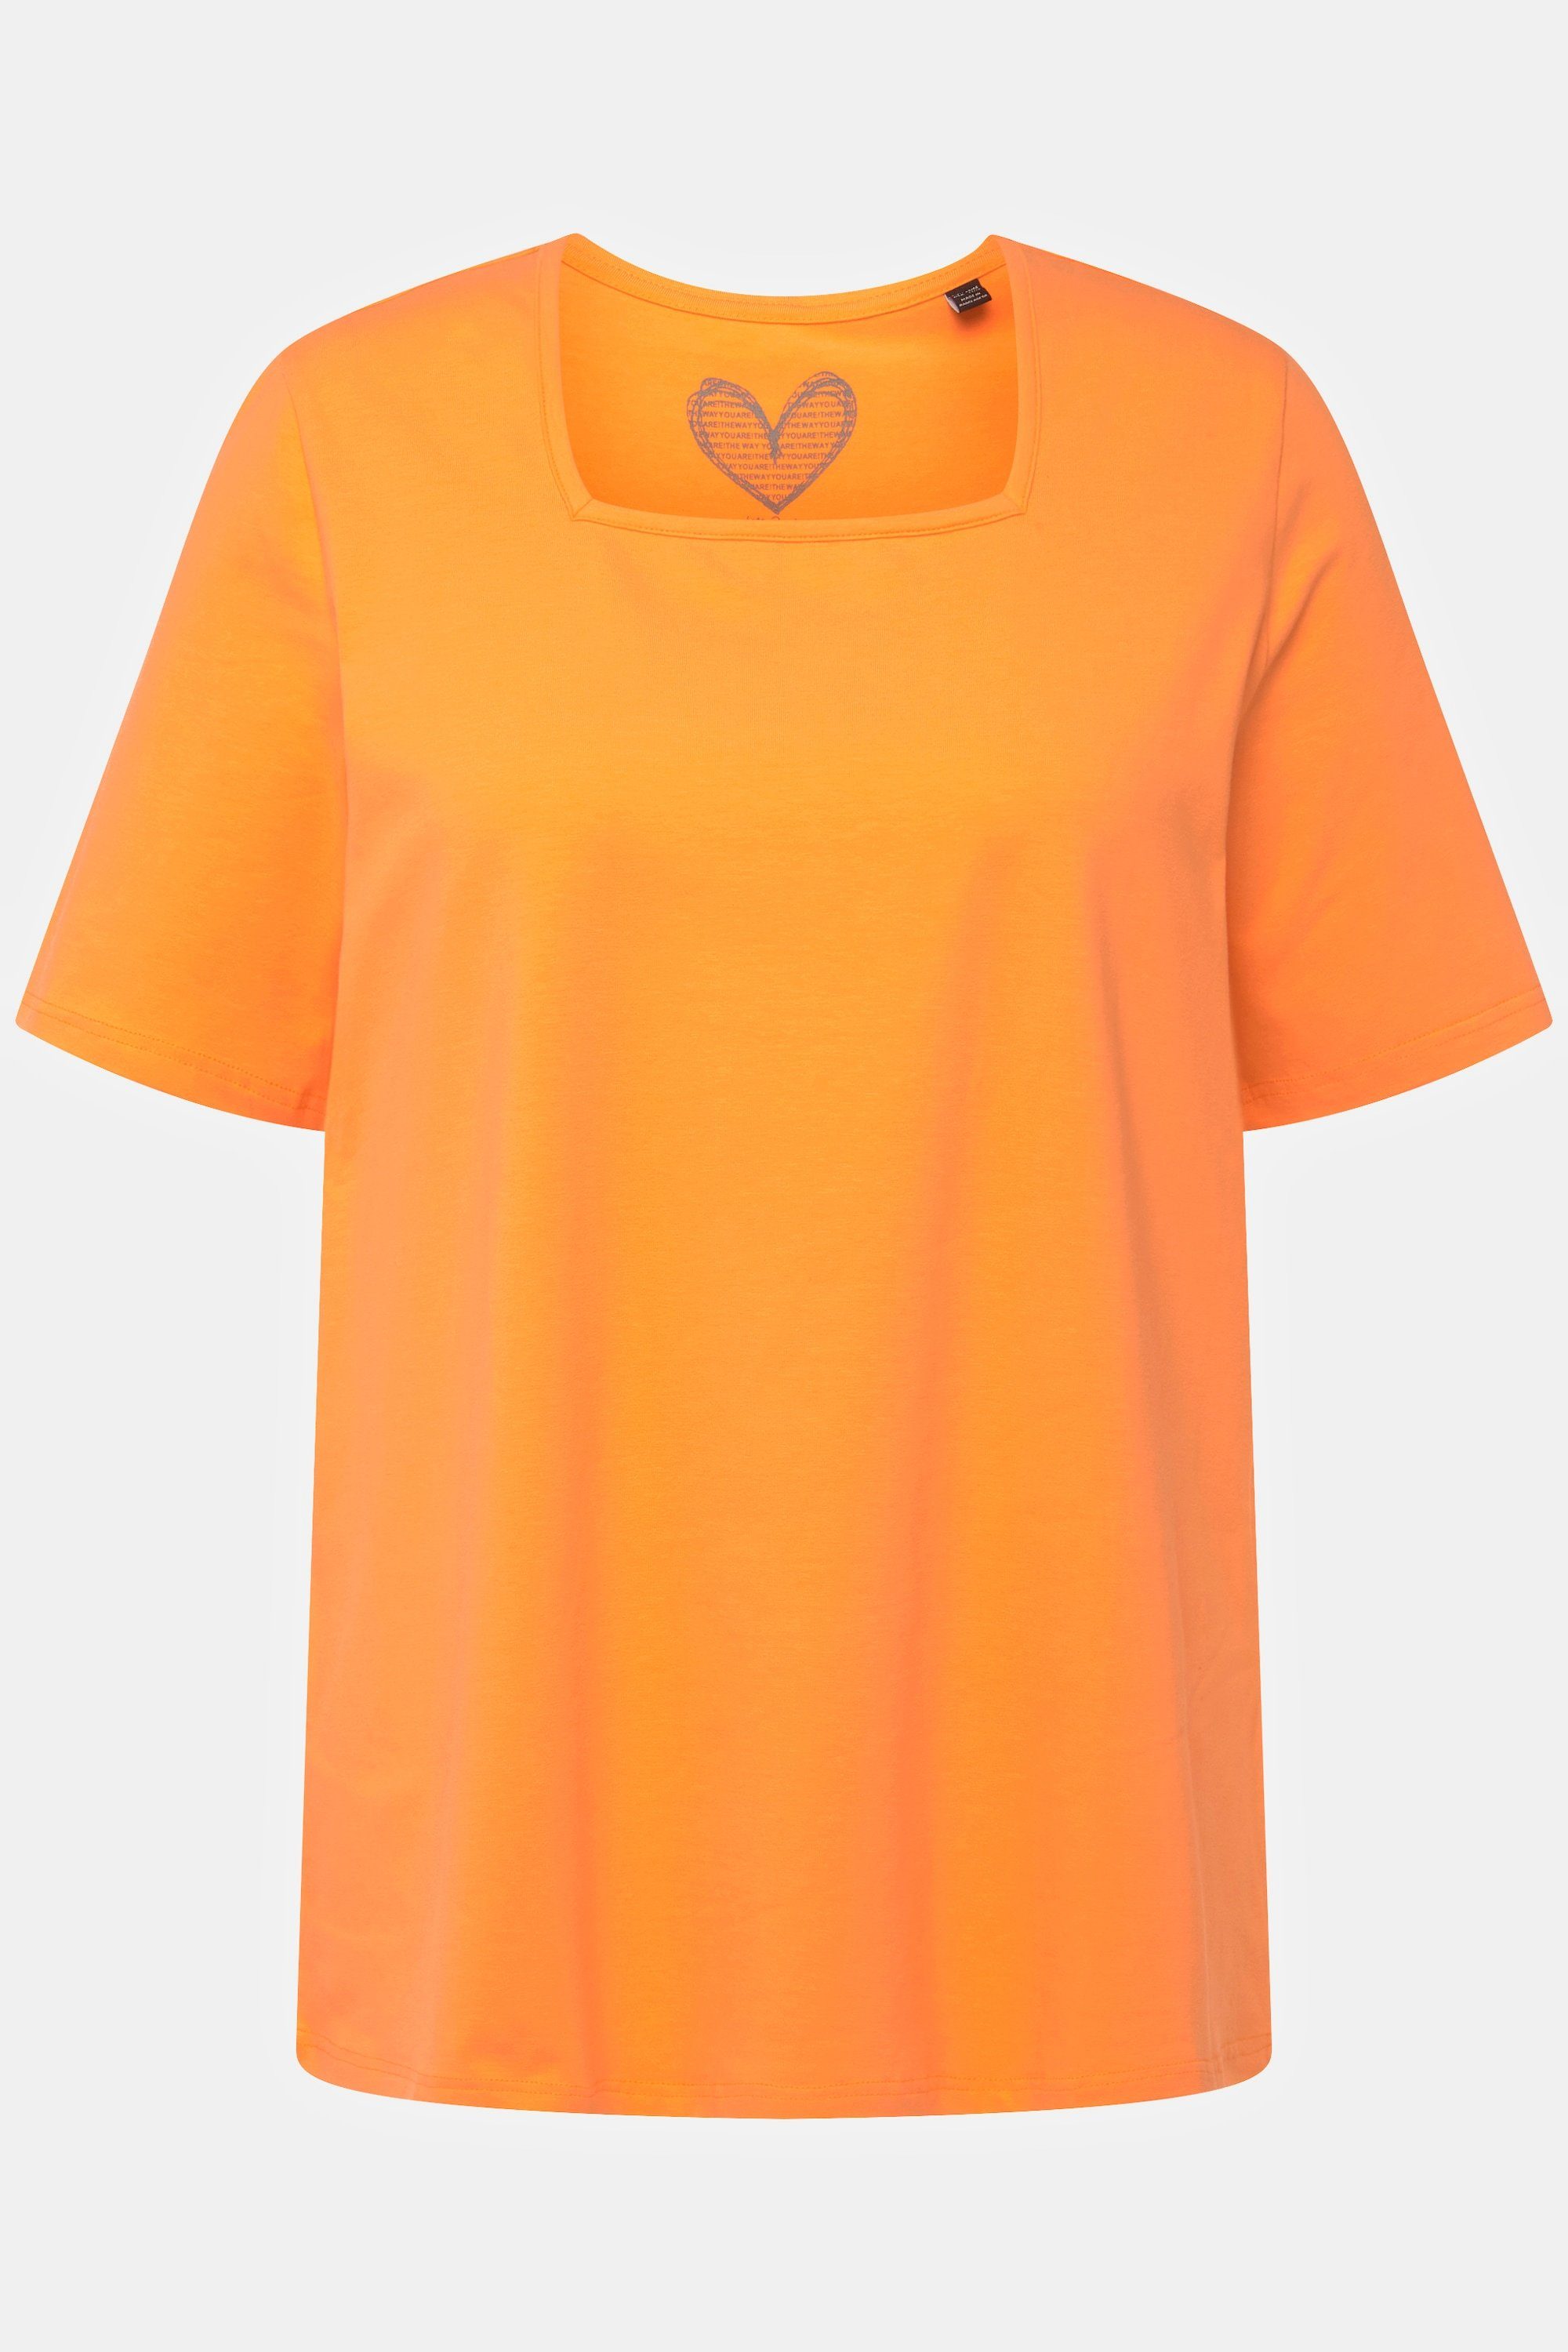 A-Linie Halbarm cantaloupe Rundhalsshirt Carree-Ausschnitt T-Shirt orange Popken Ulla